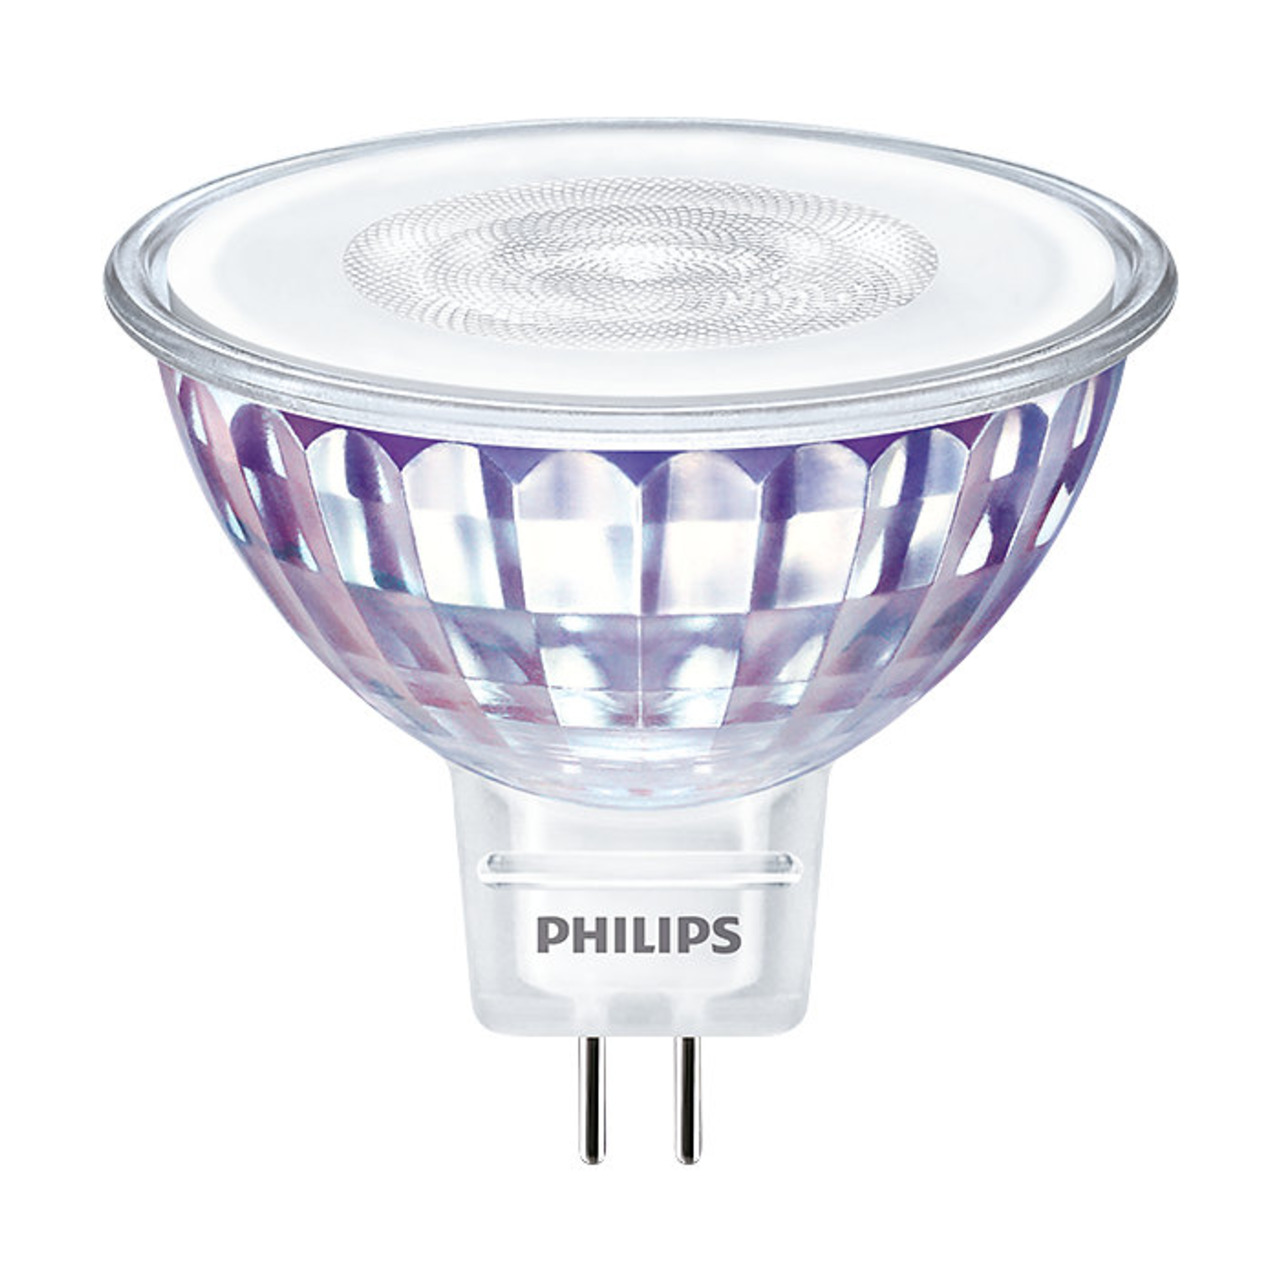 Philips 5-8-W-GU5-3-LED-Lampe Master LEDspot Value- MR16- 490 lm- neutralweiss (4000 K)- 60- dimmbar unter Beleuchtung